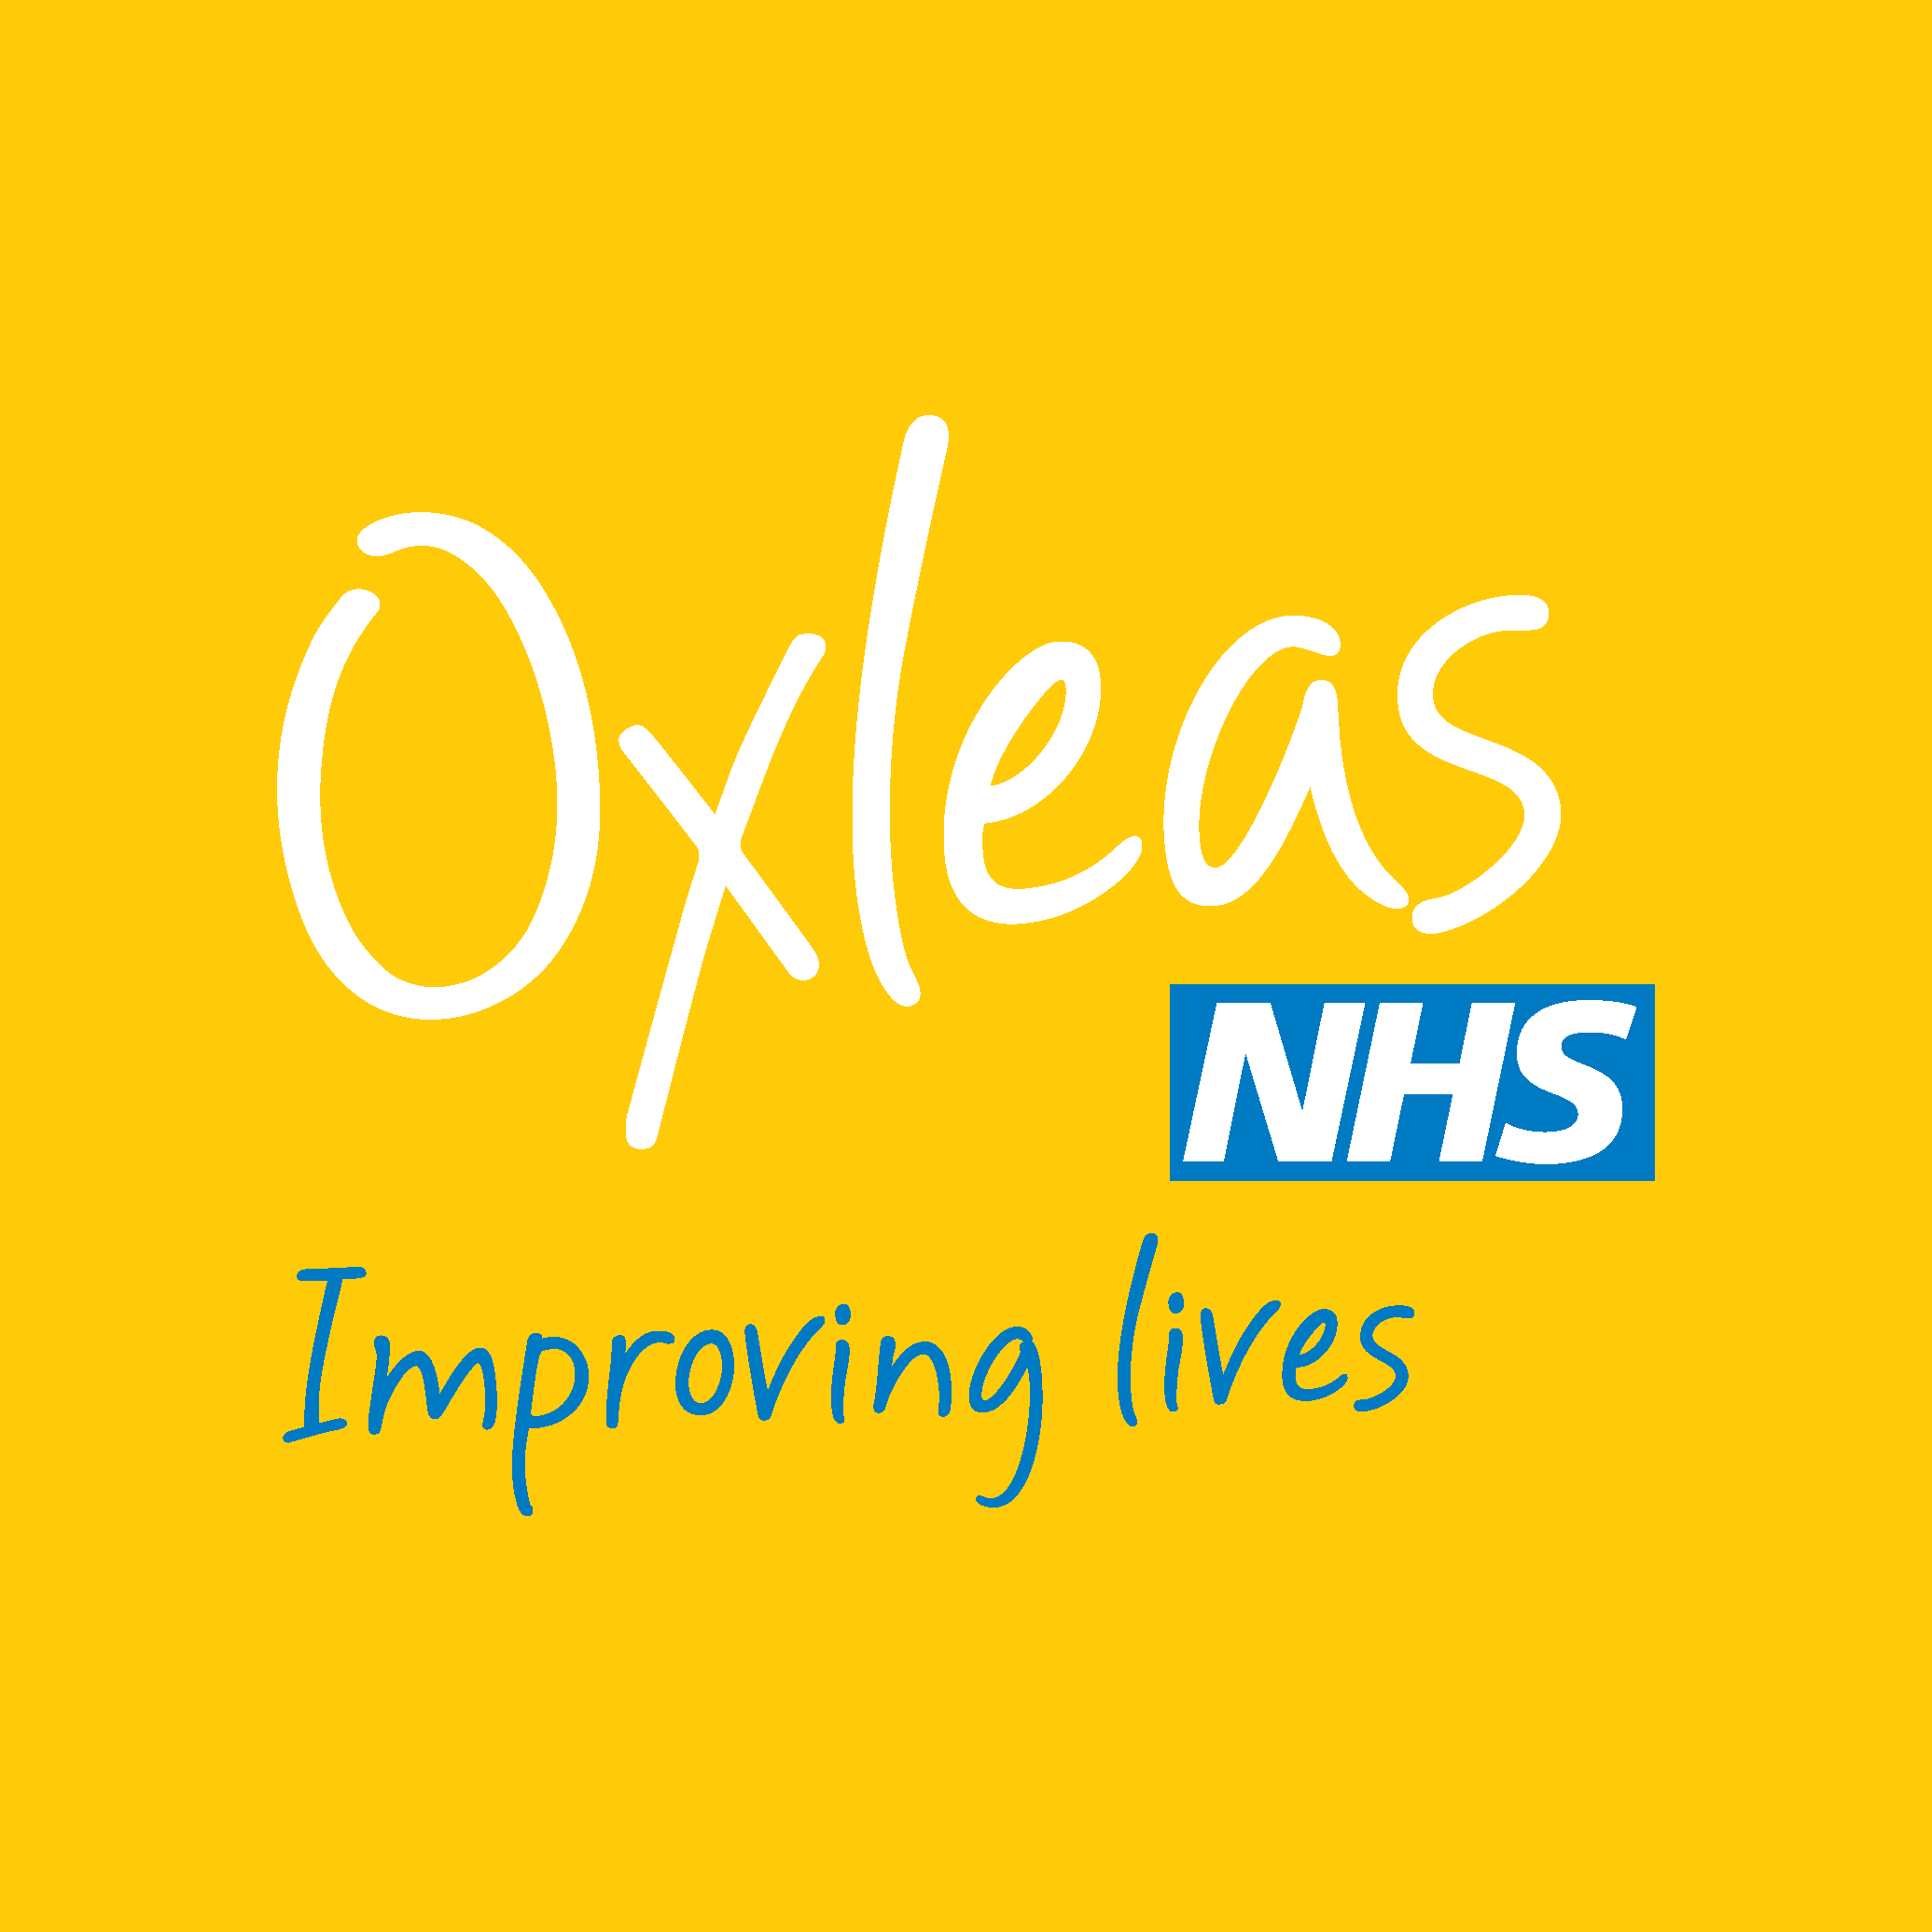 Oxleas NHS Trust Memorial Hospital